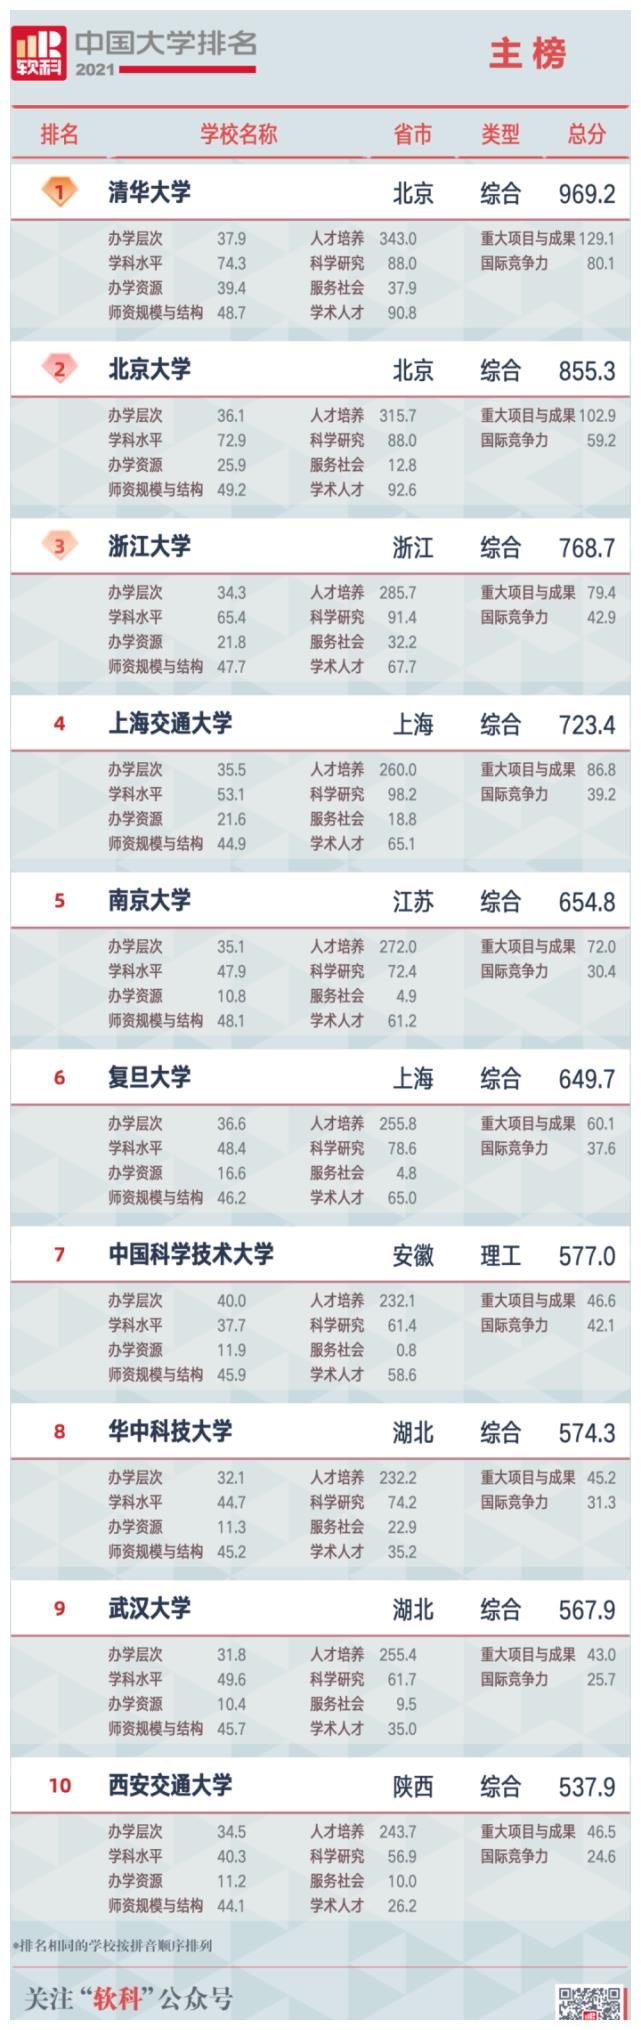 2021 软科中国大学排名发布，非双一流跻身百强，冠军高校保持领先，会带来哪些影响？